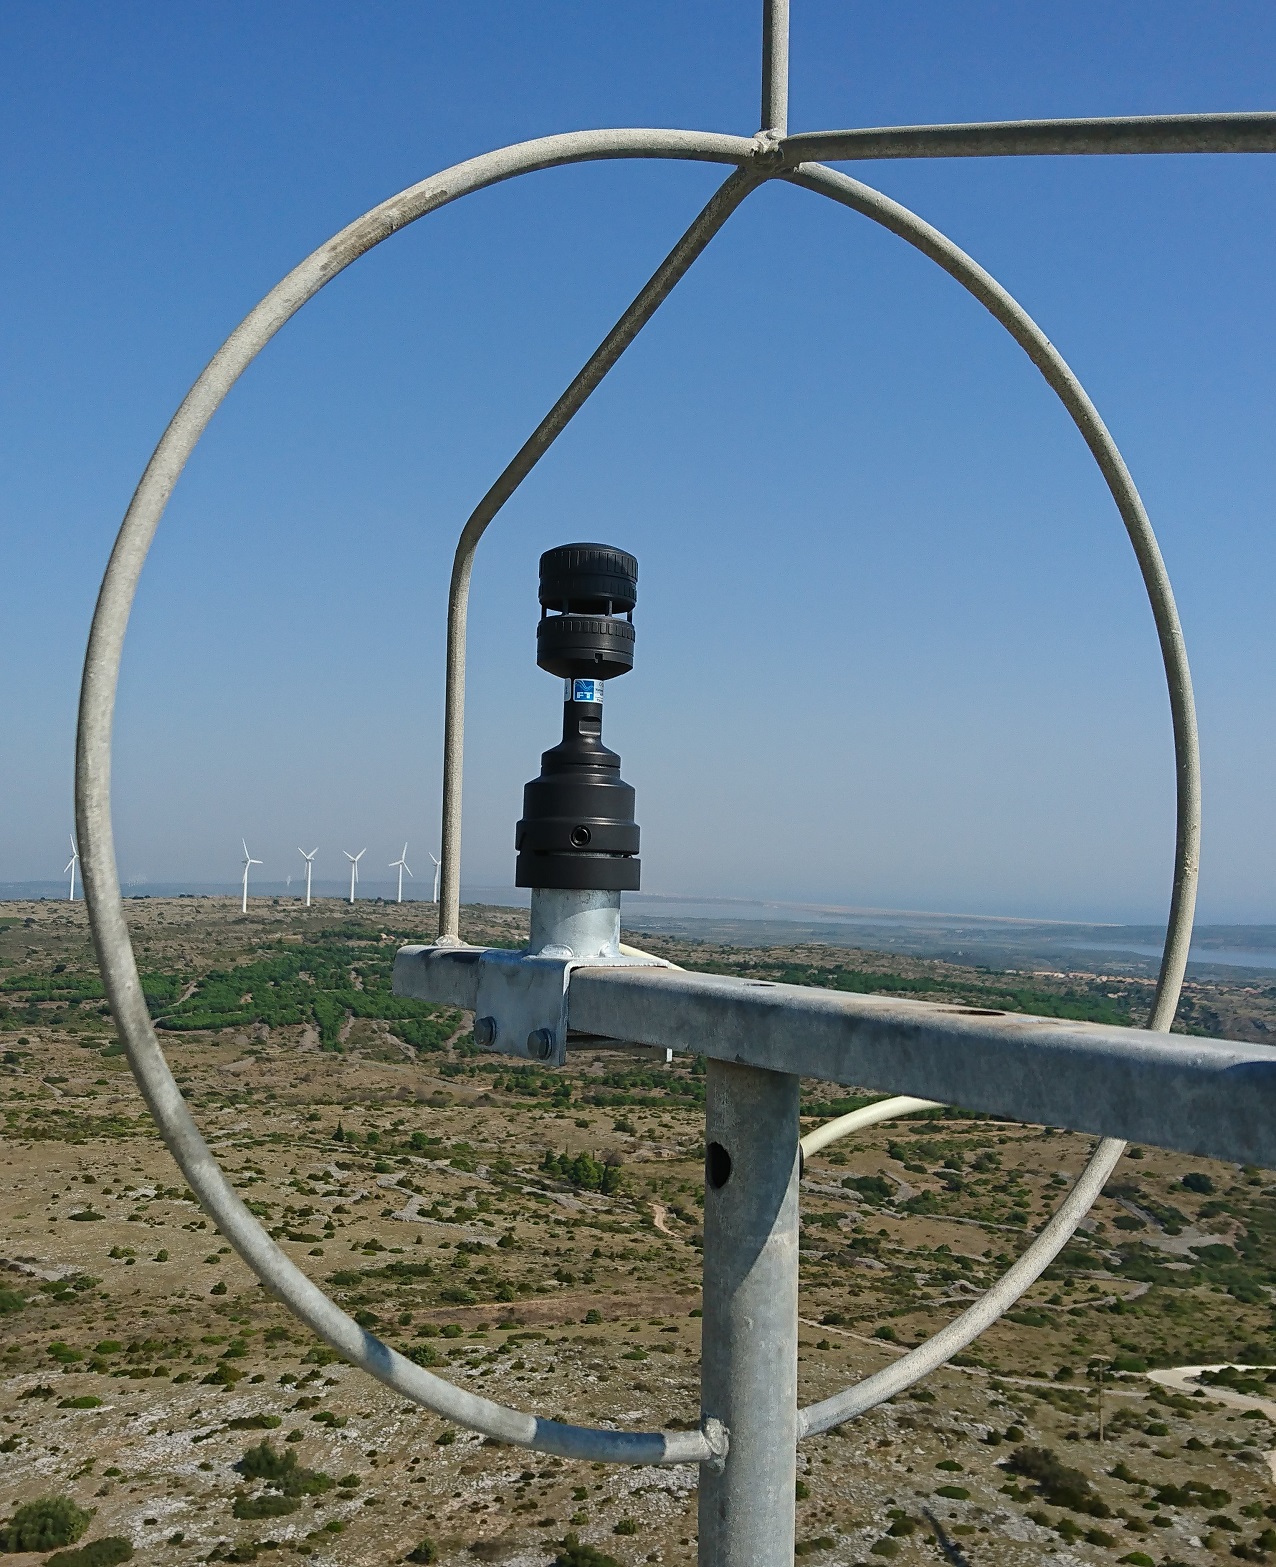 Ultraschall-Windsensor FT742-DM50 bei der Montage auf einer Windturbine mit Hilfe des Ausrichtungskragens und Laser-Ausrichtungswerkzeug.